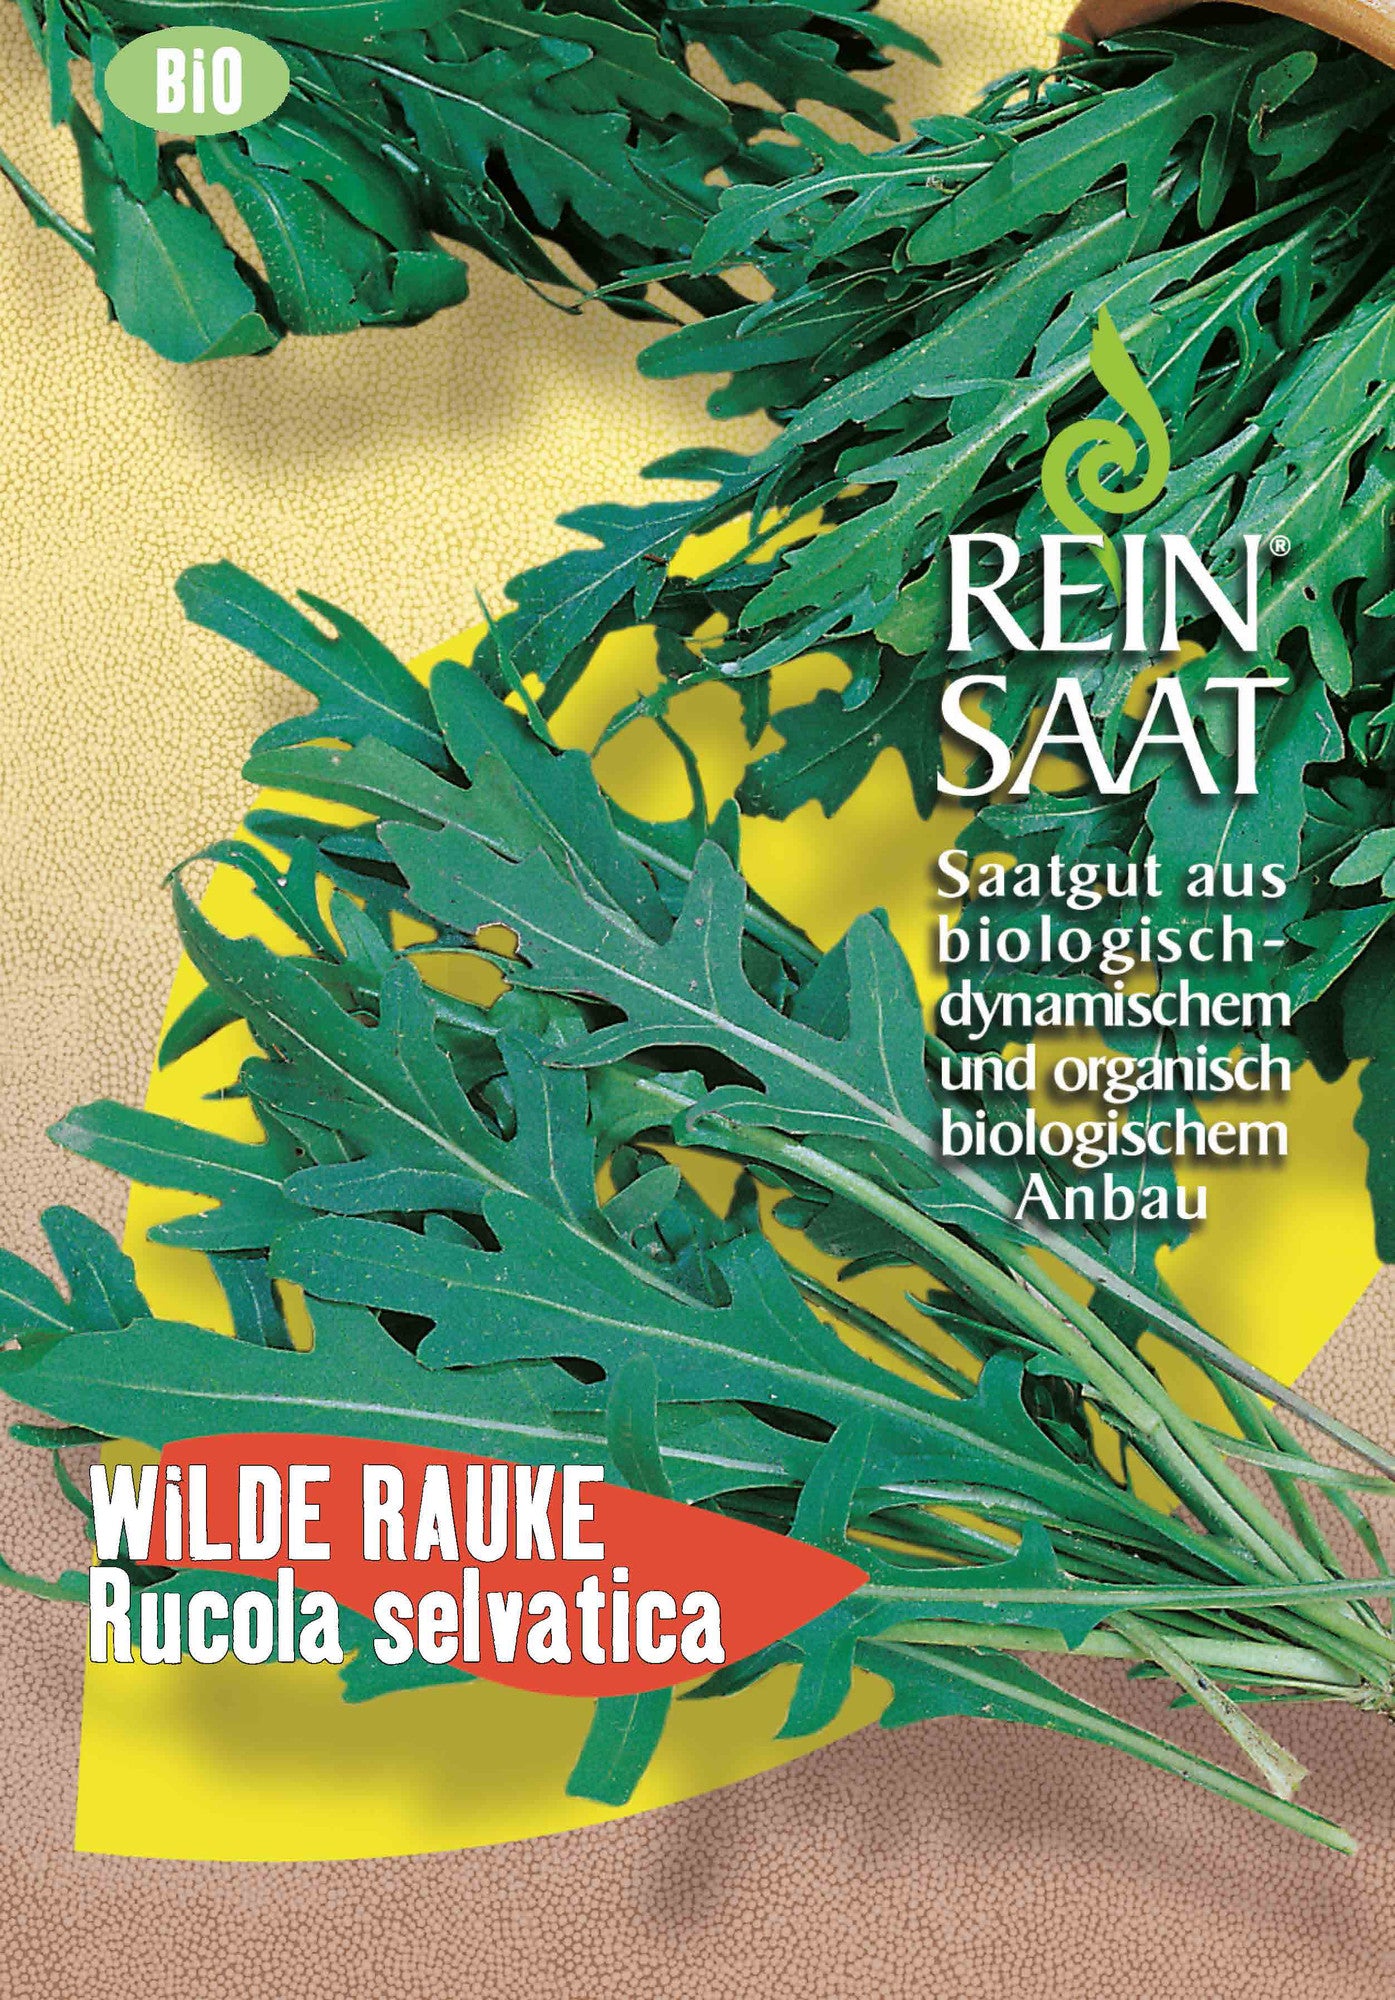 Wilde Rauke Rucola selvatica | BIO Raukesamen von Reinsaat